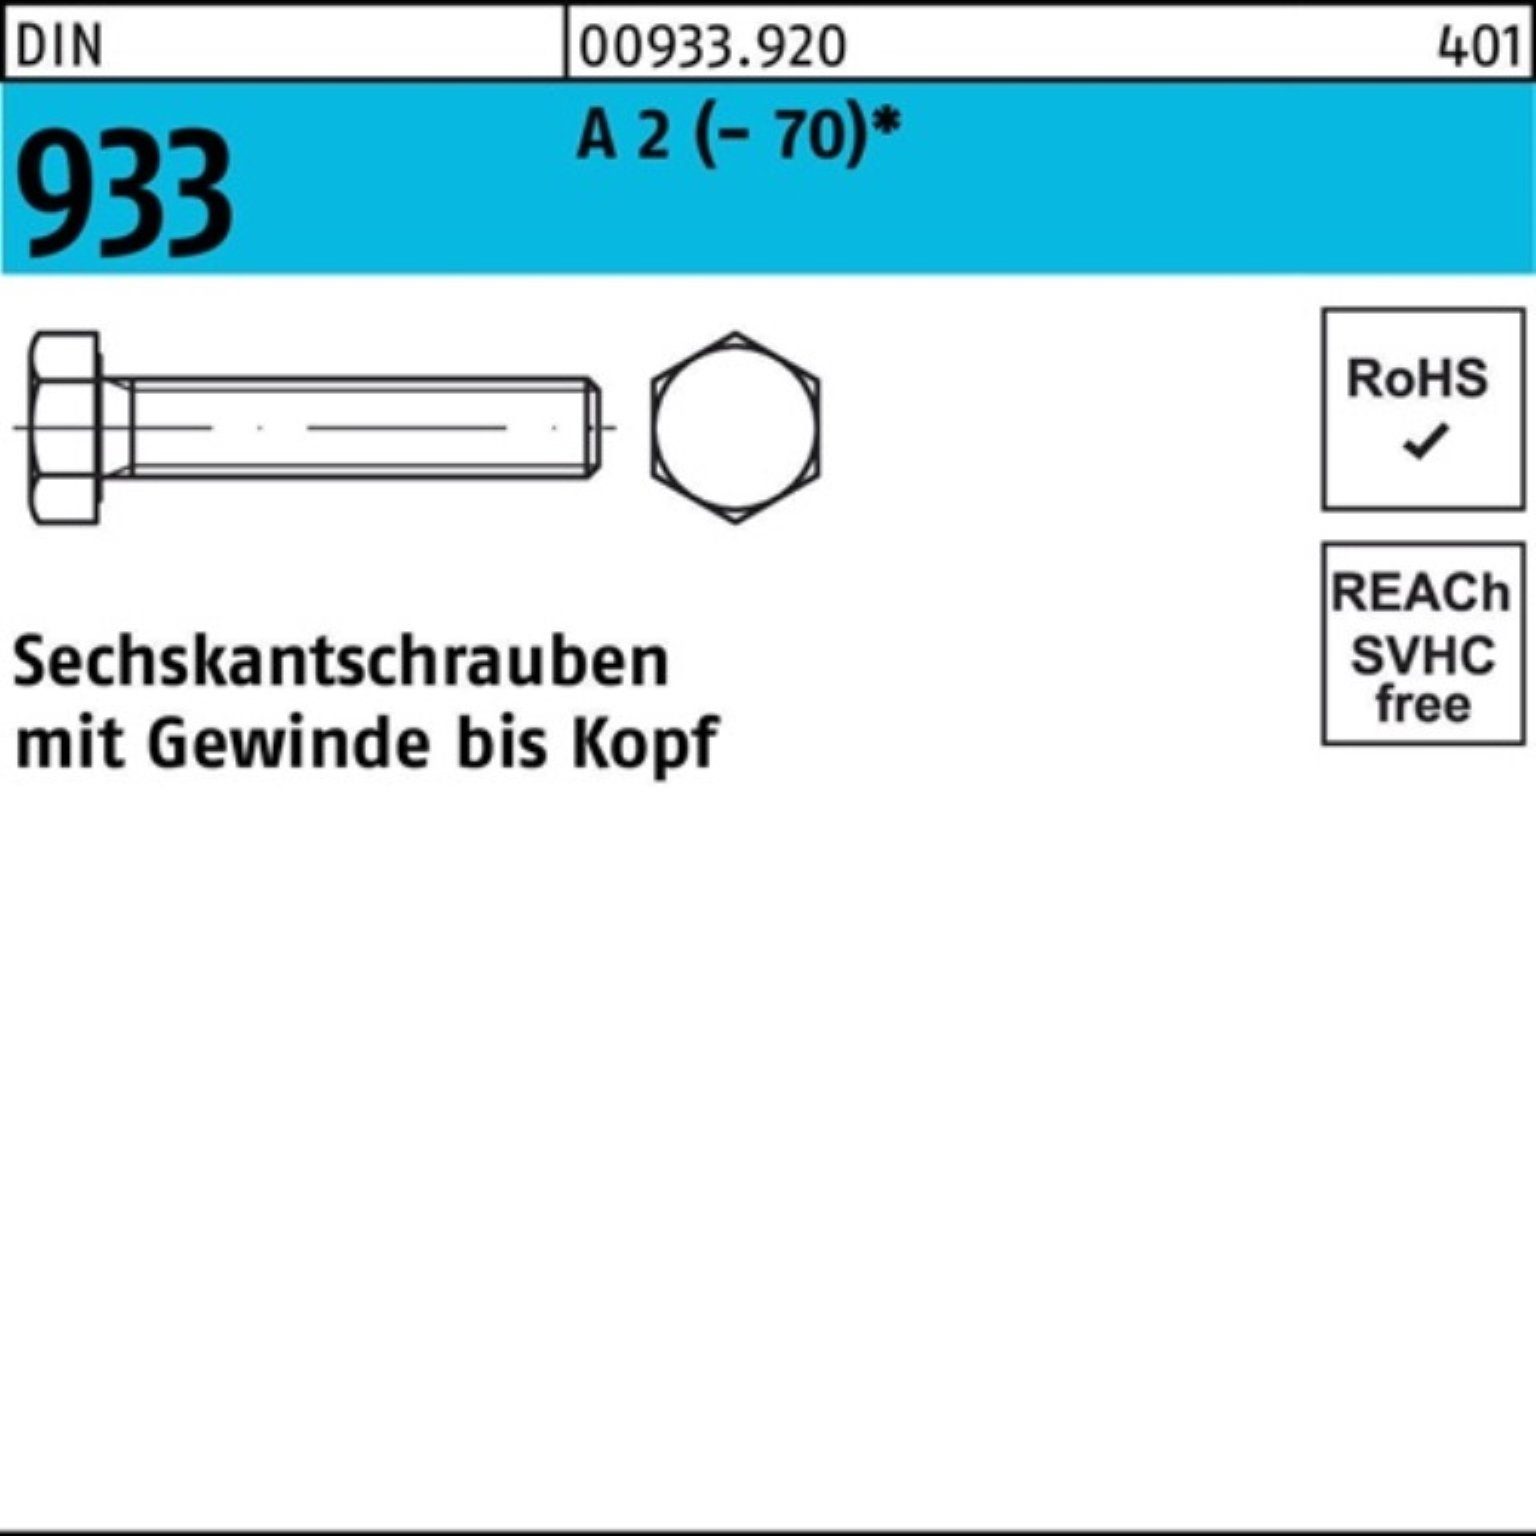 Reyher Sechskantschraube 100er Pack Sechskantschraube DIN 933 VG M10x 16 A 2 (70) 100 Stück